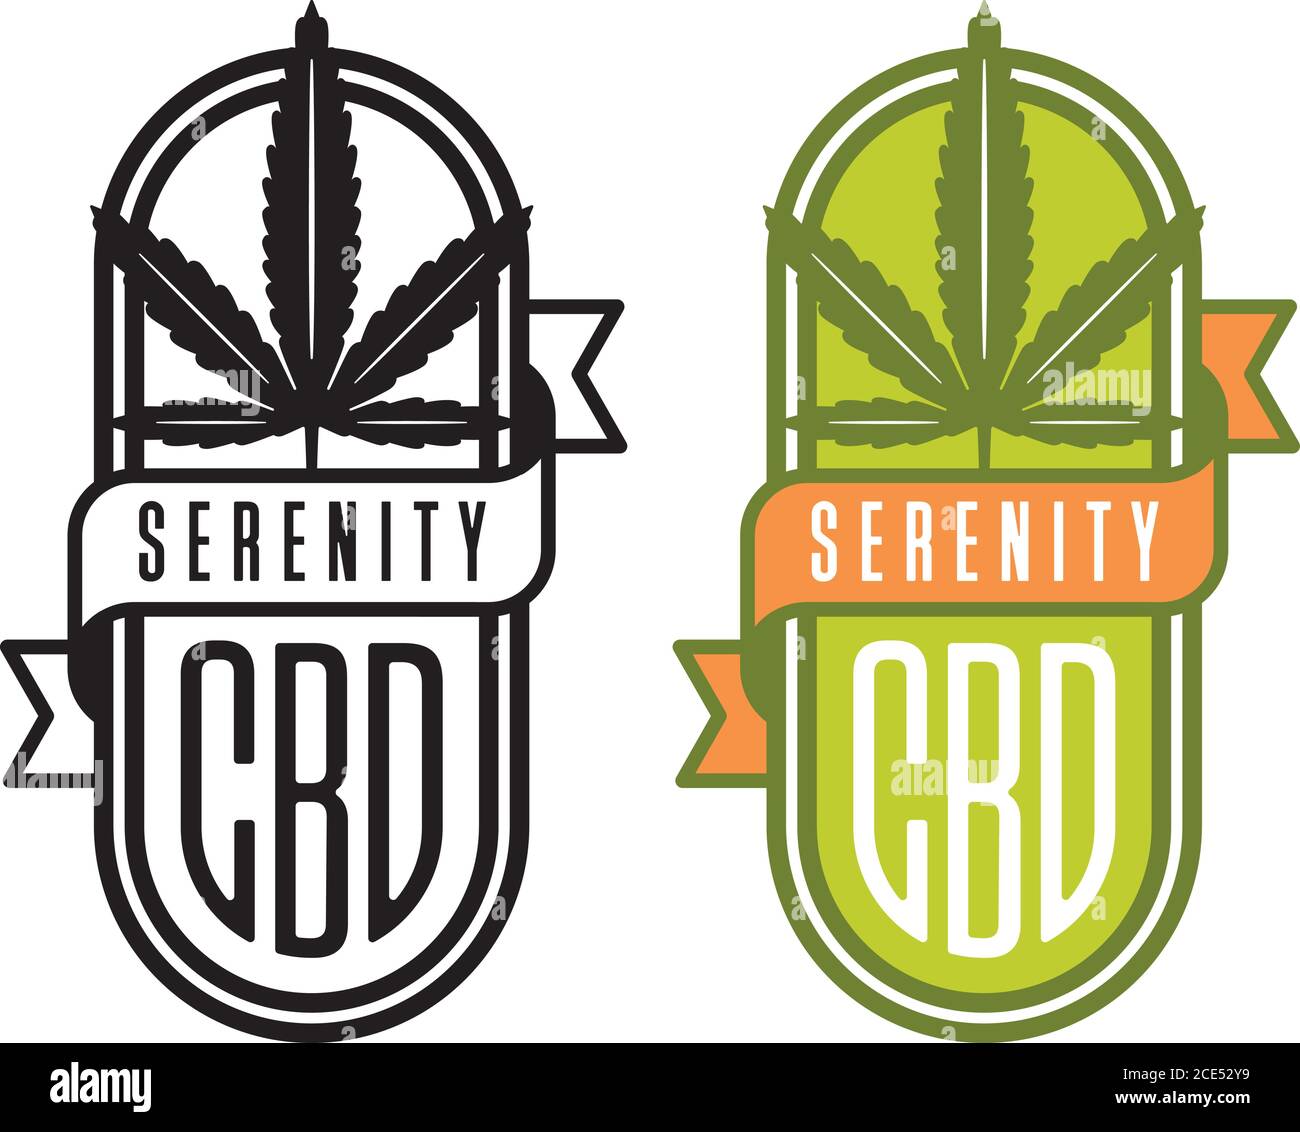 Cannabis CBD Vektor Logo oder Abzeichen. Cannabisblatt-Design mit CBD und Serenity-Banner. Umfasst Ausführungen in Farbe sowie in Schwarzweiß. Stock Vektor